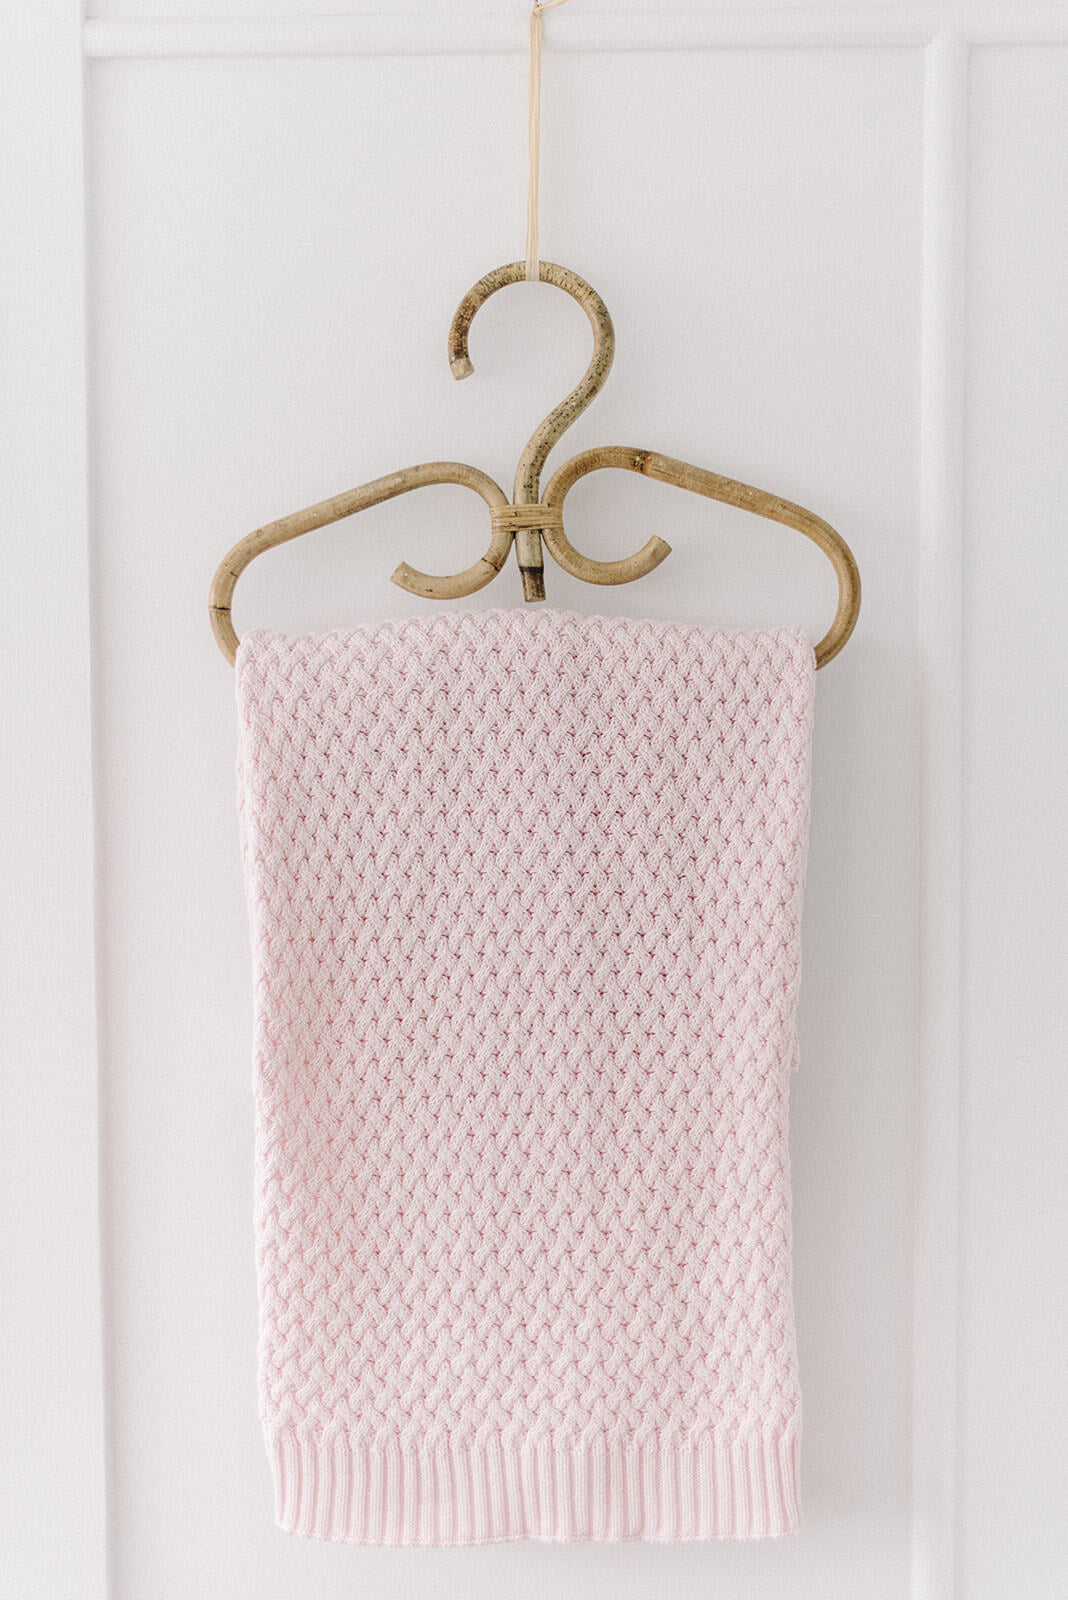 Blush Pink Knit Baby Blanket